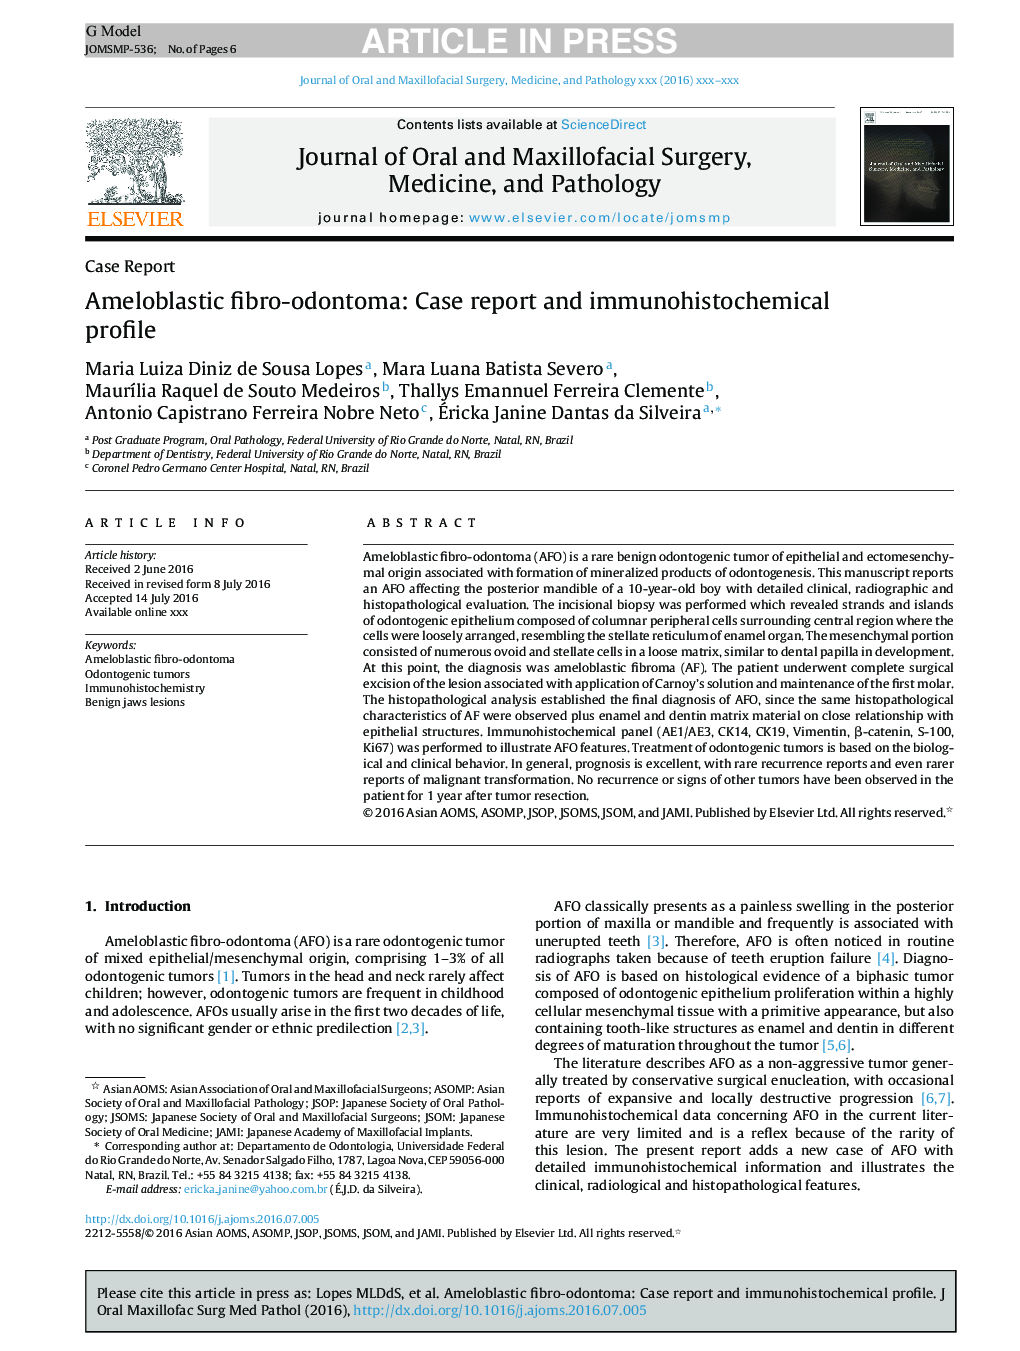 Ameloblastic fibro-odontoma: Case report and immunohistochemical profile